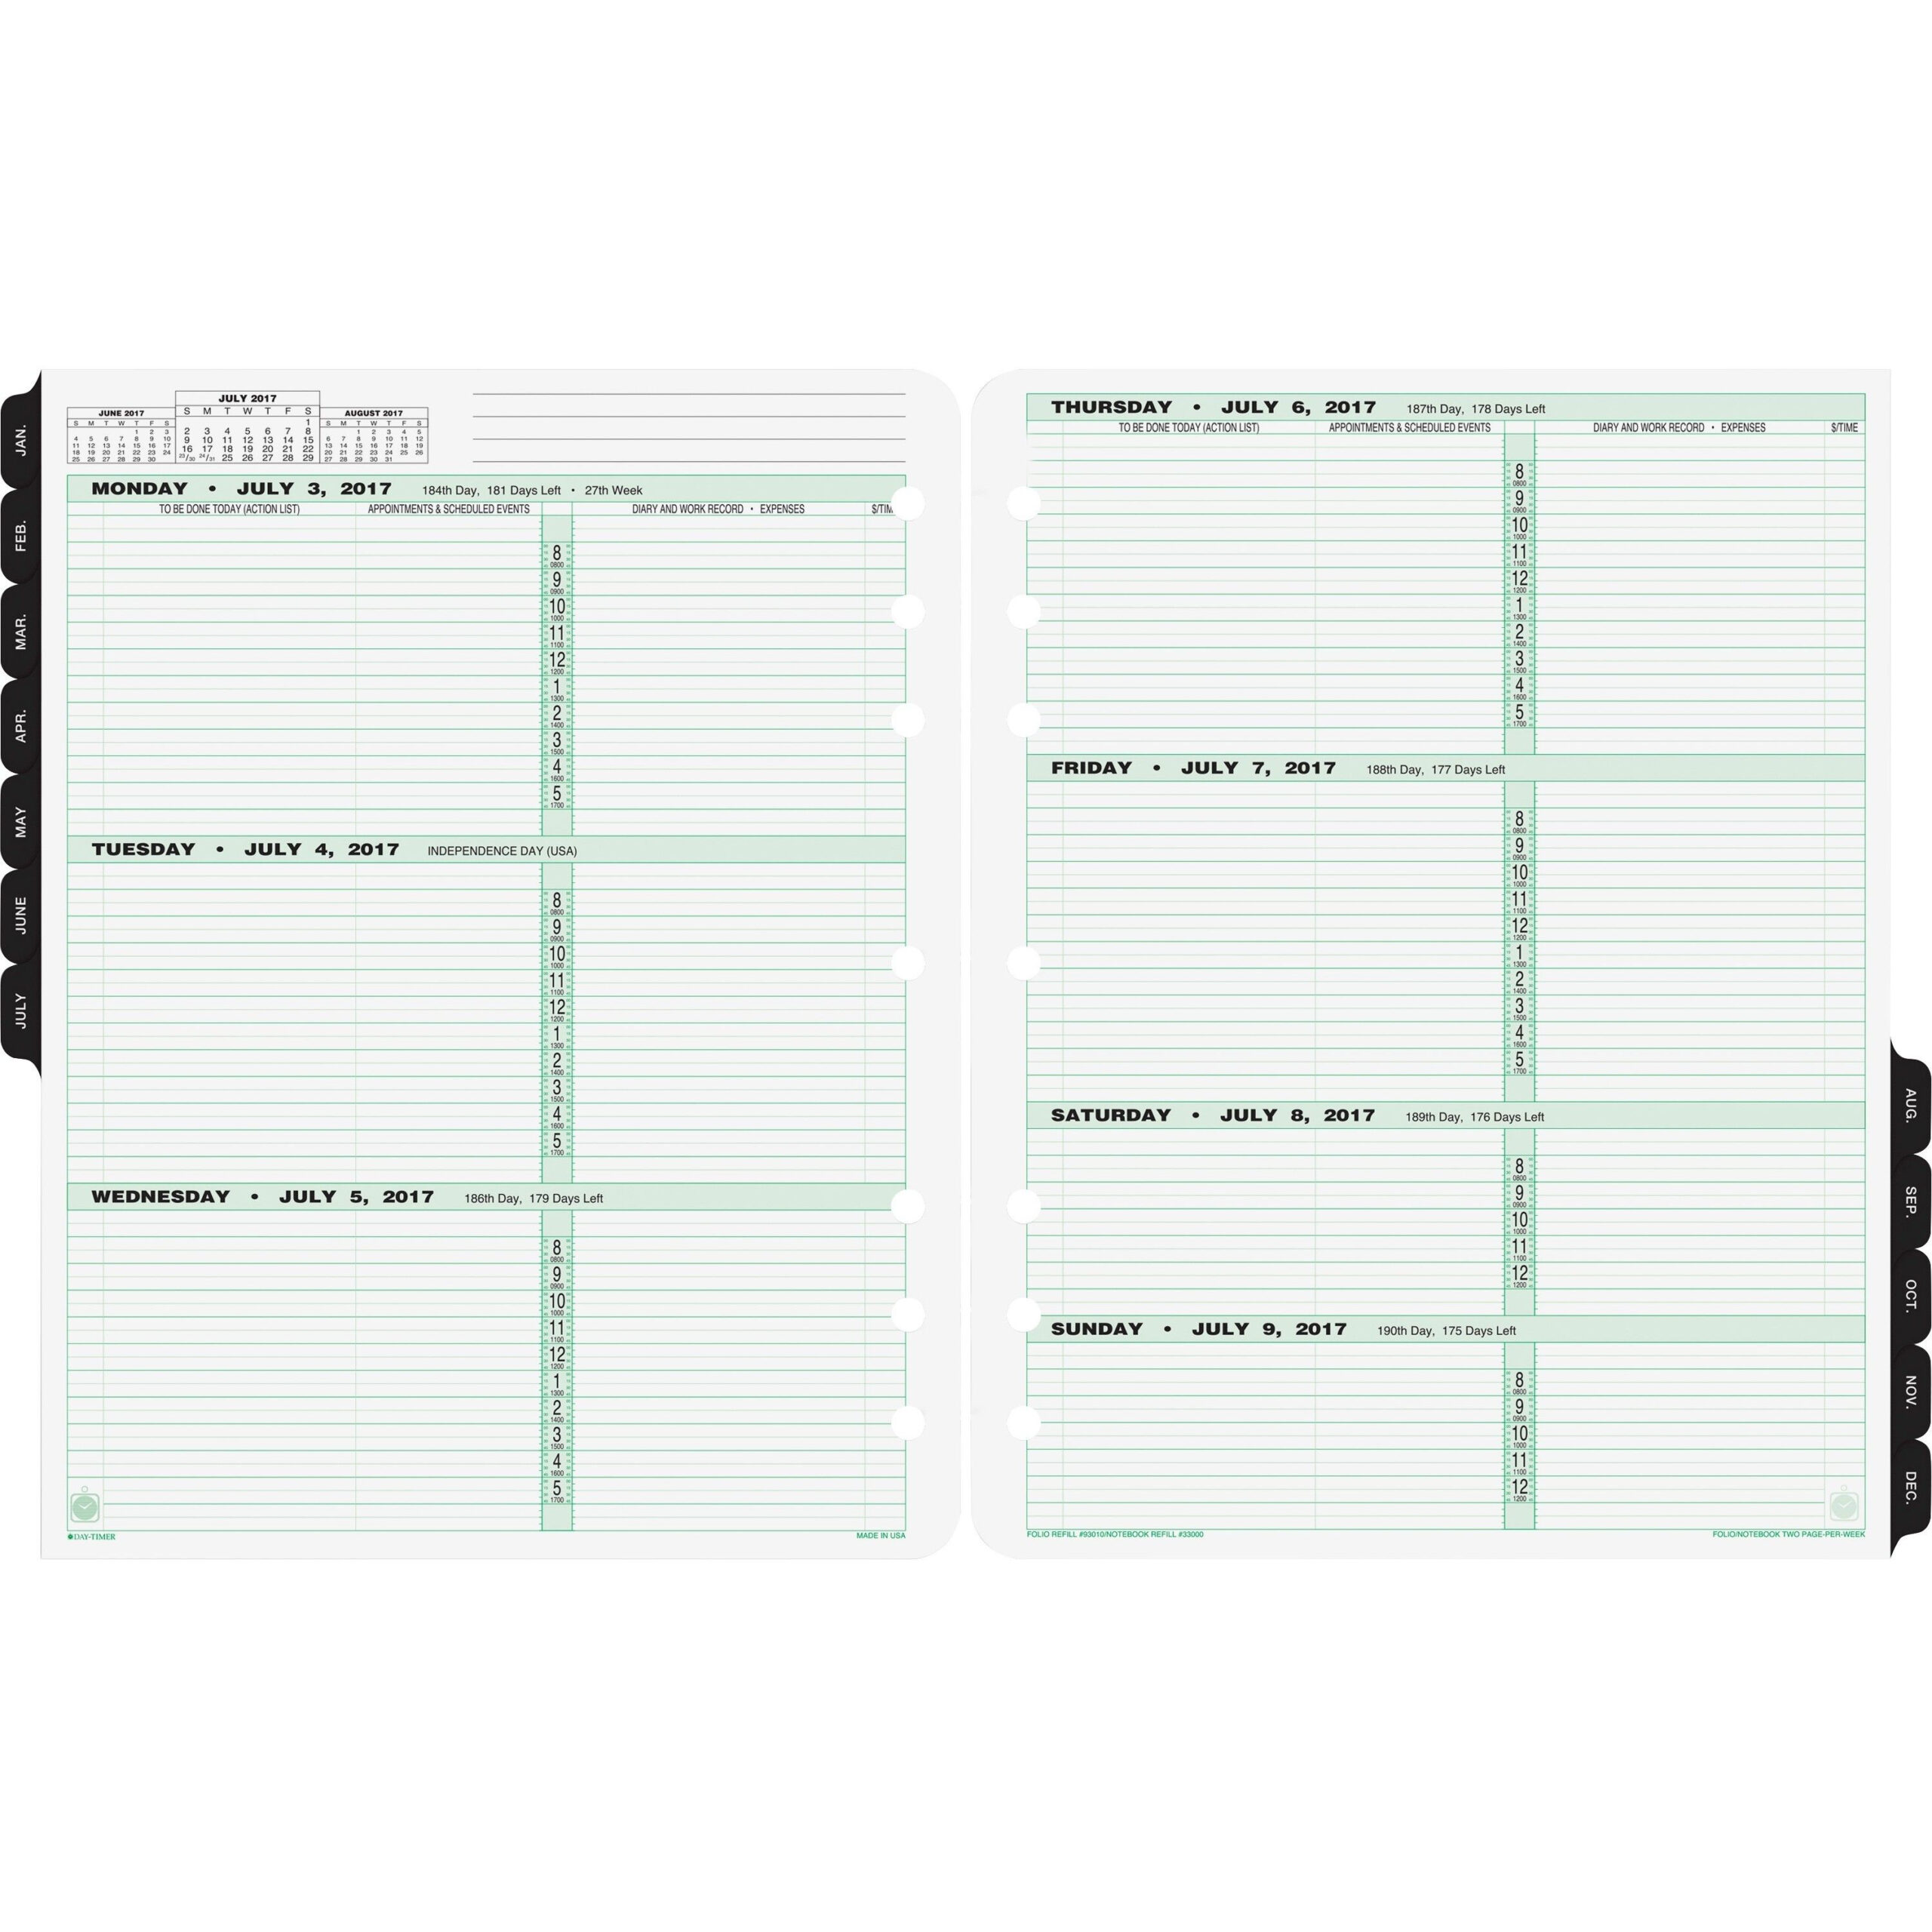 calendar-one-week-per-page-example-calendar-printable